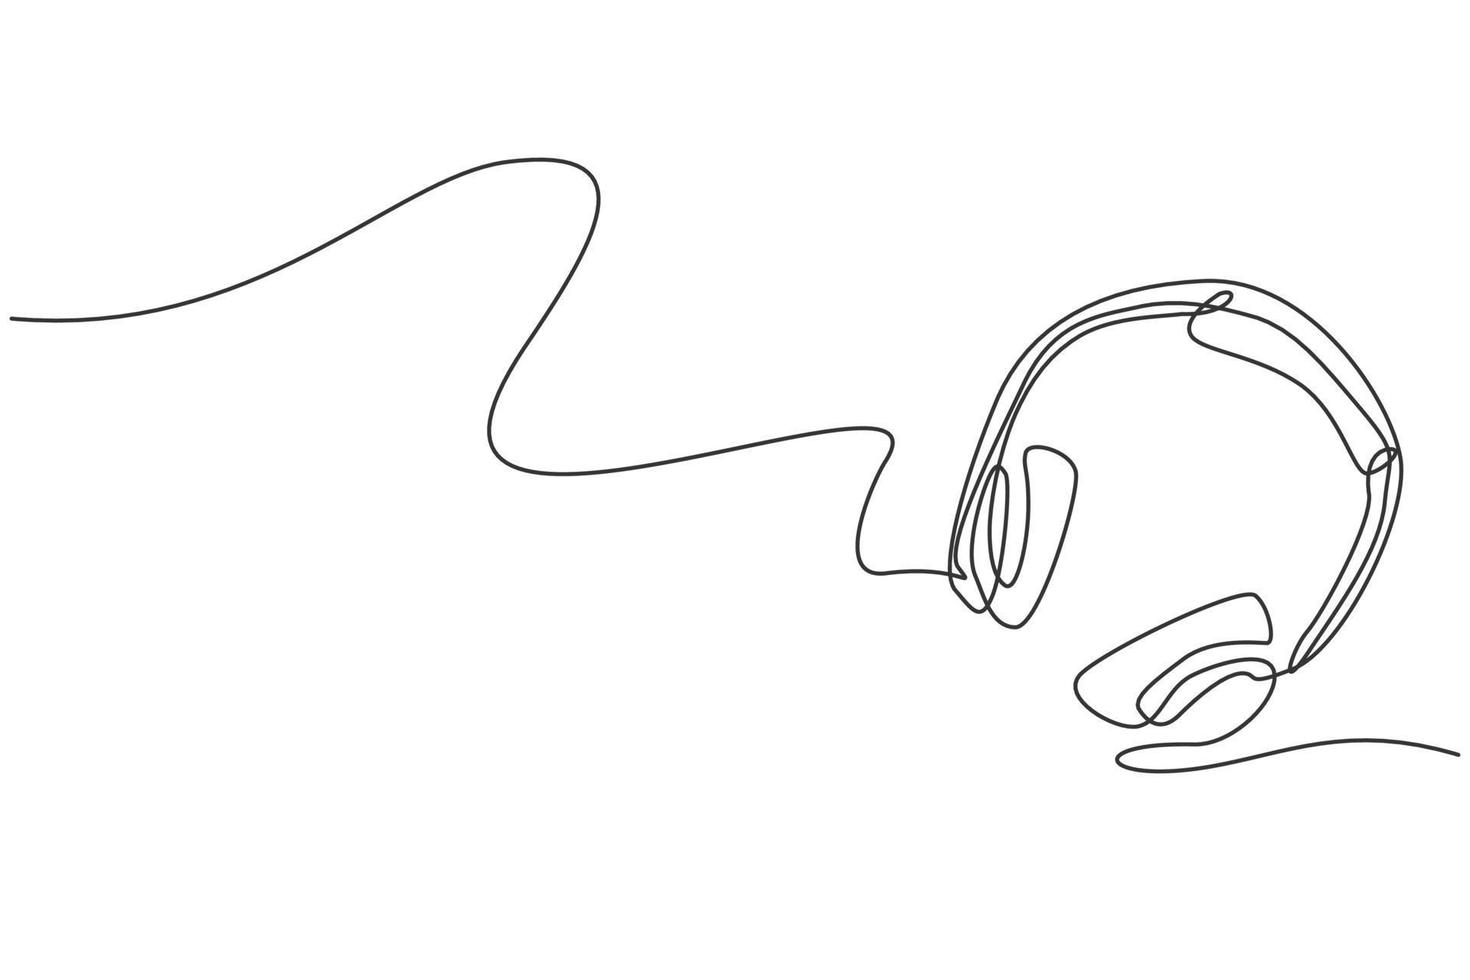 enkele doorlopende lijntekening van hoofdtelefoon vanuit bovenaanzicht. muziek opname apparatuur tools concept. moderne één lijn tekenen ontwerp grafische vectorillustratie vector